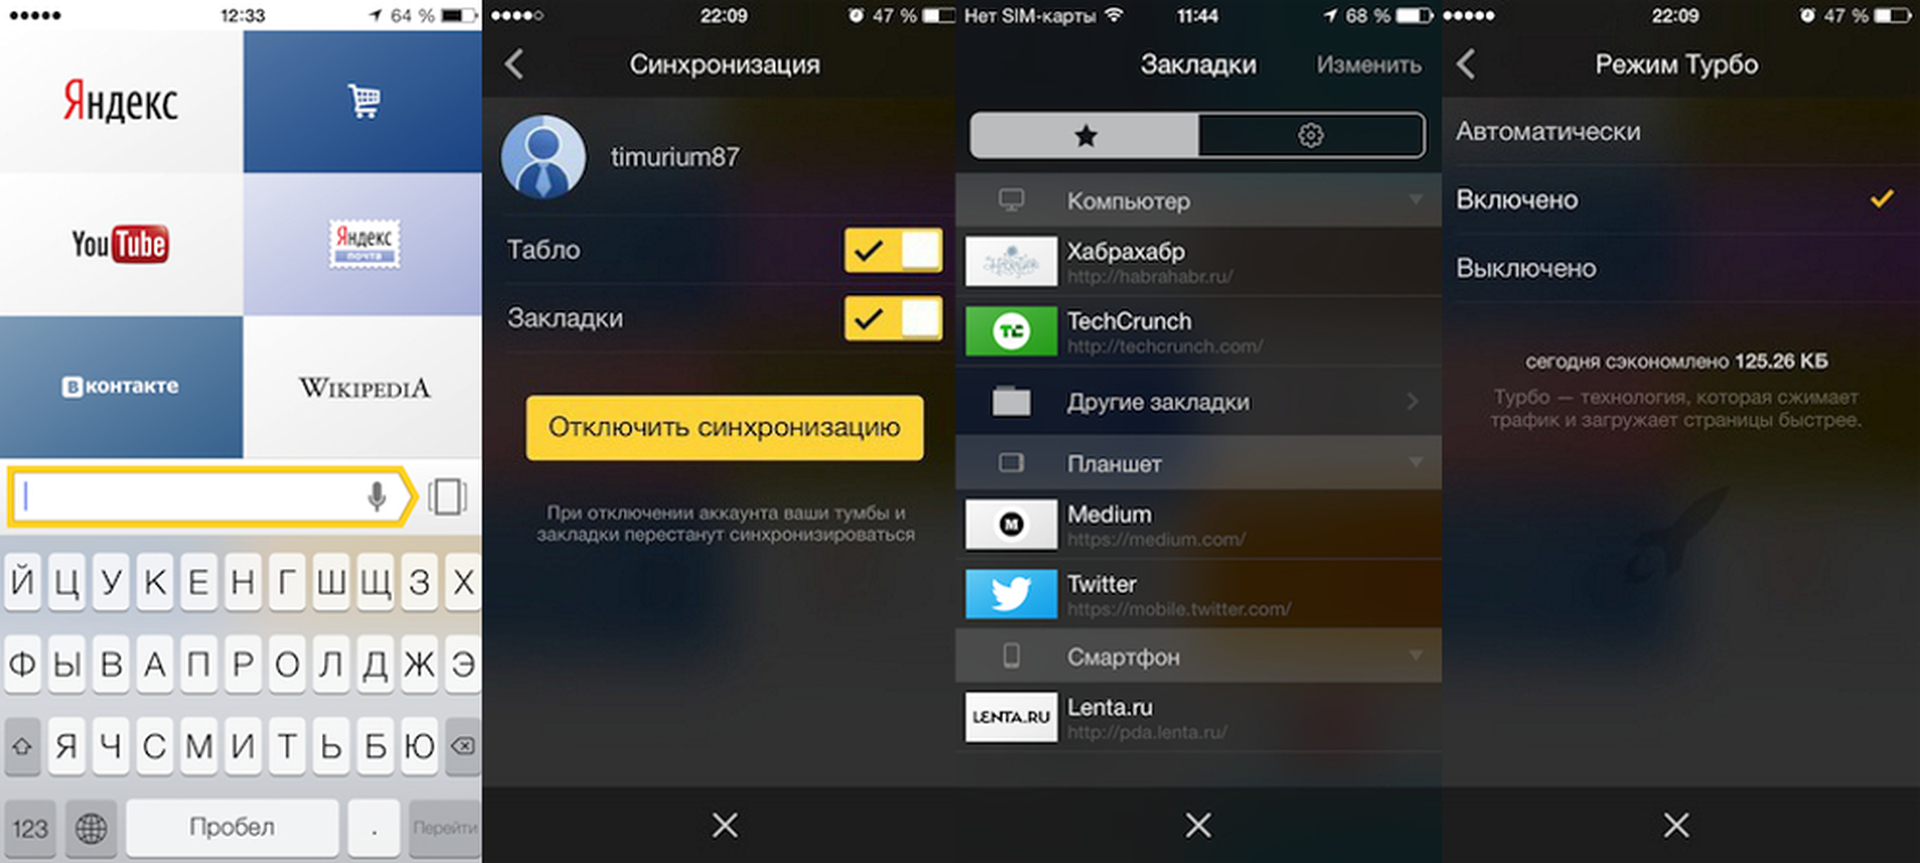 Как отключить синхронизацию в Яндекс браузере